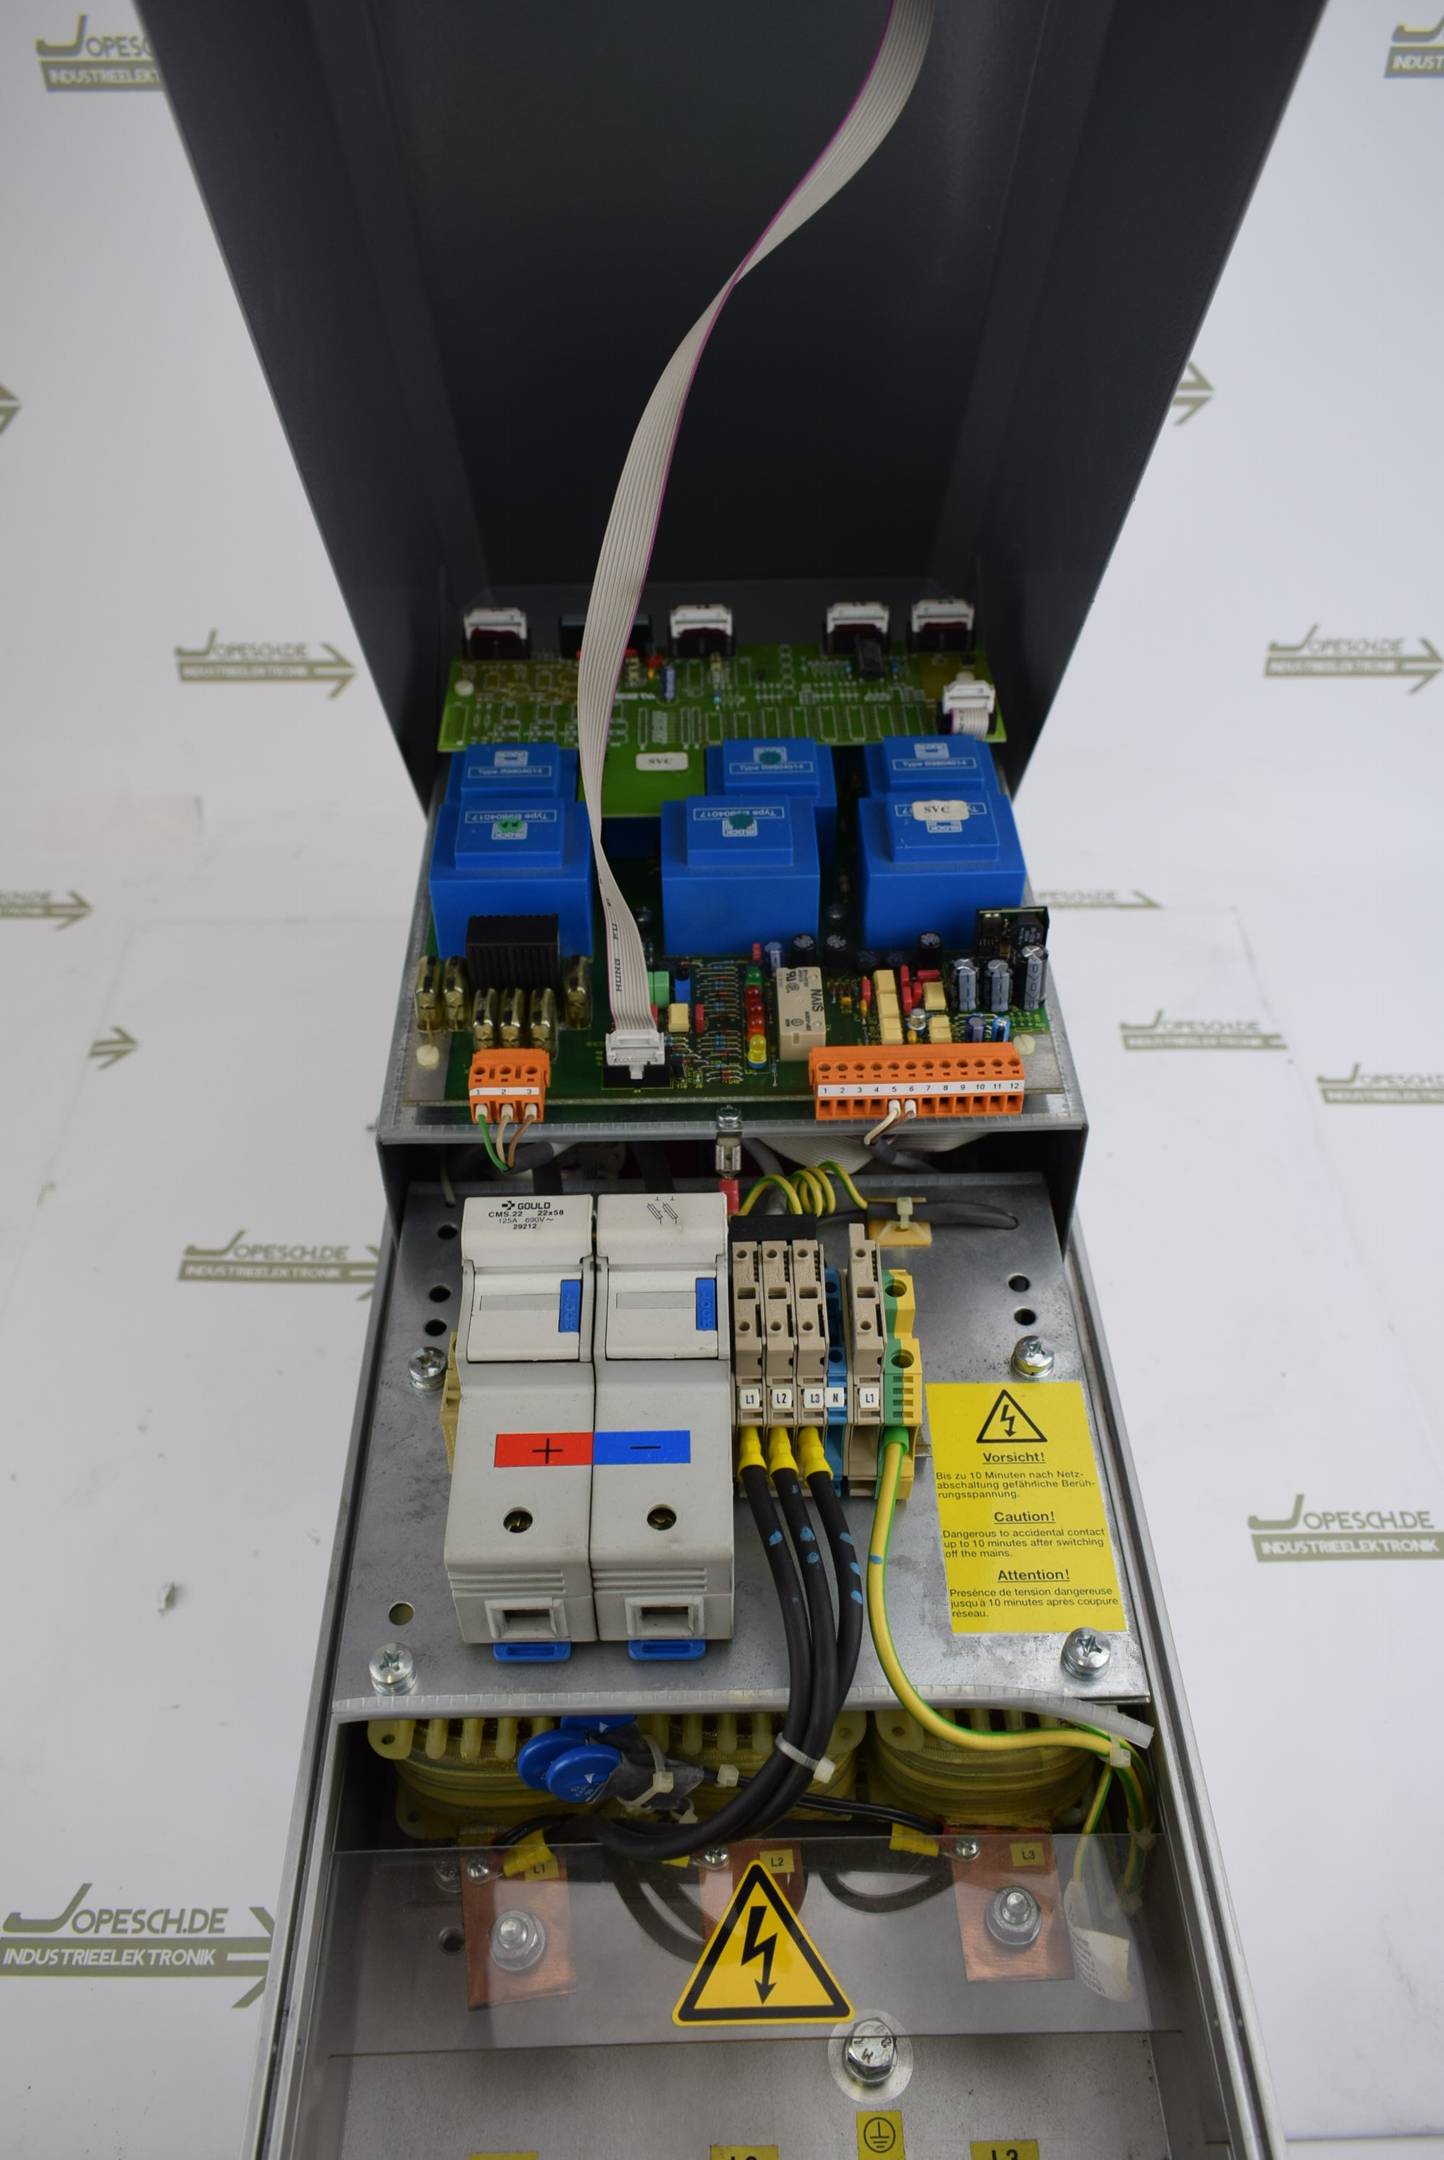 REVCON Wechselrichtersystem SVC 45-400-1-230 V AC